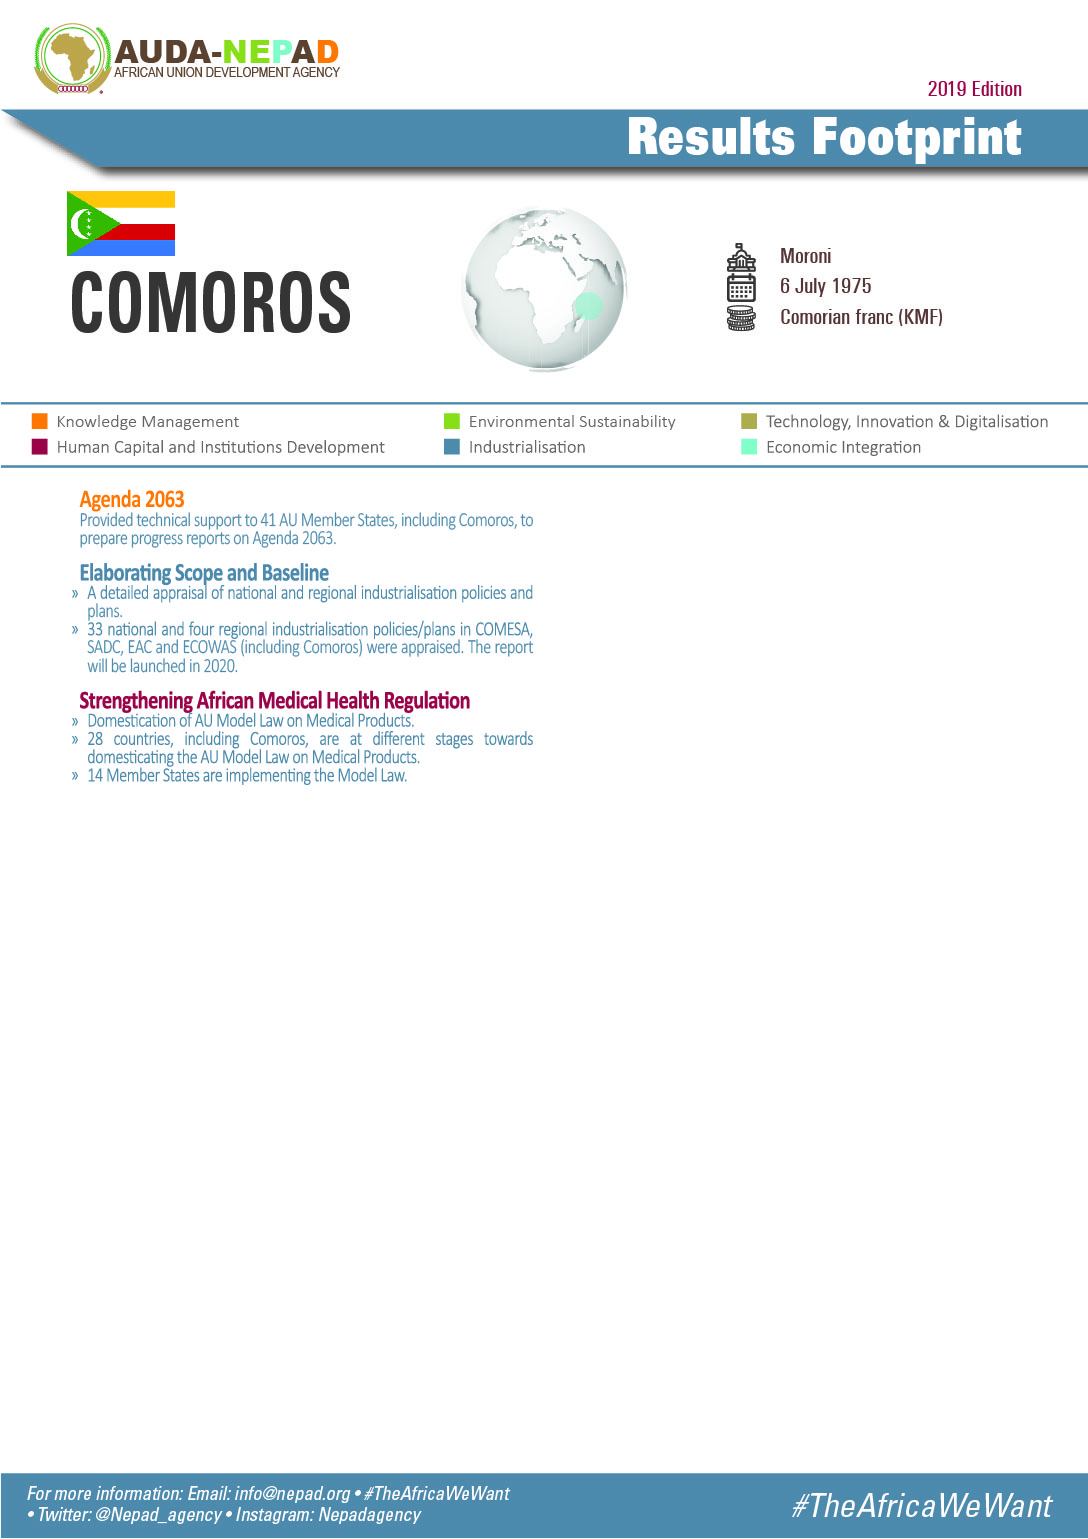 2019 AUDA-NEPAD Footprint: Country Profiles: Comoros